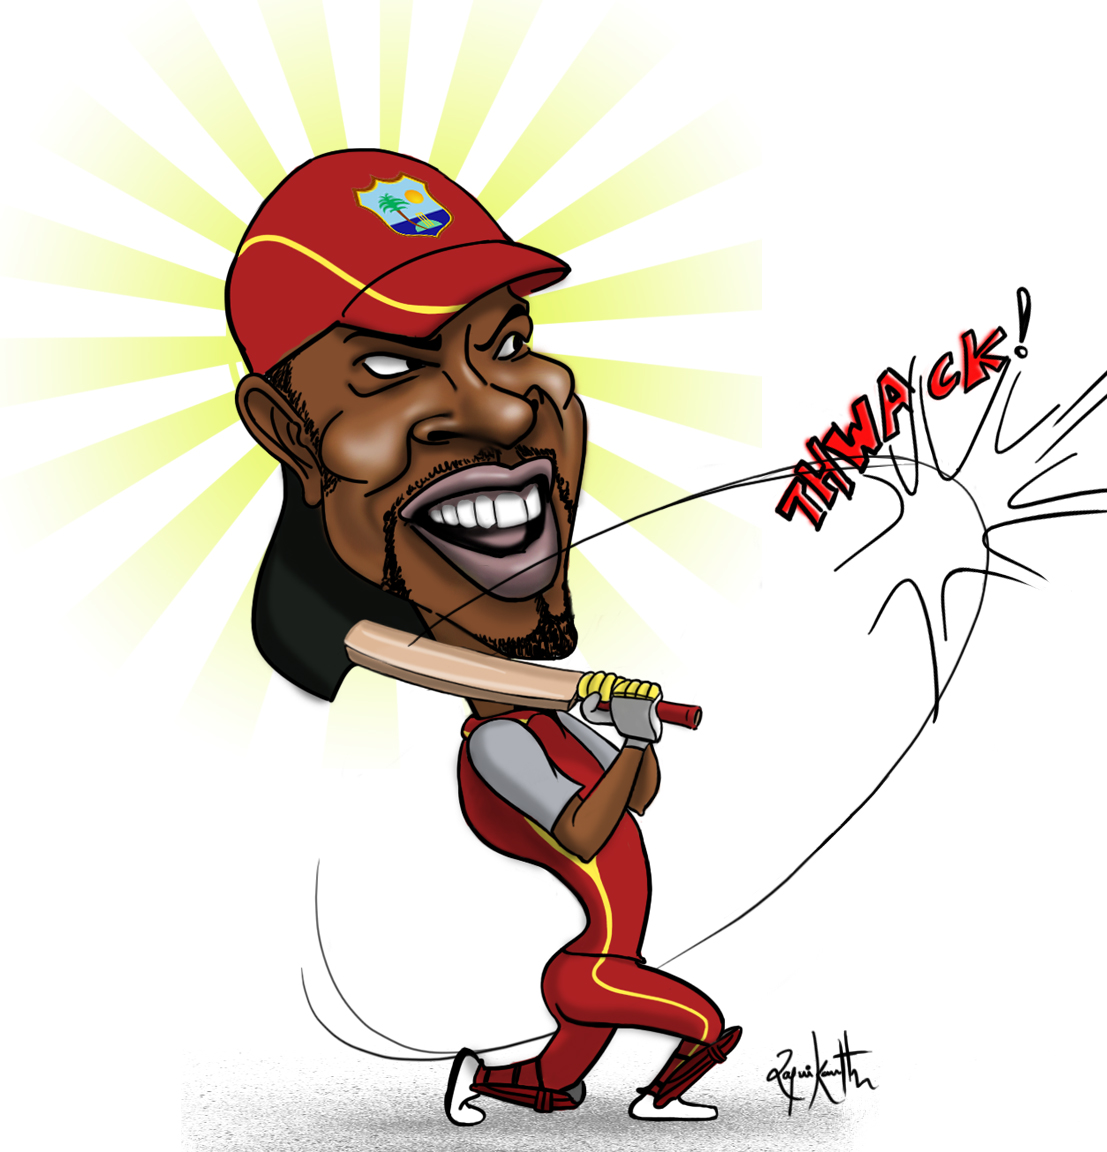 Chris_Gayle_West_Indies_cricket